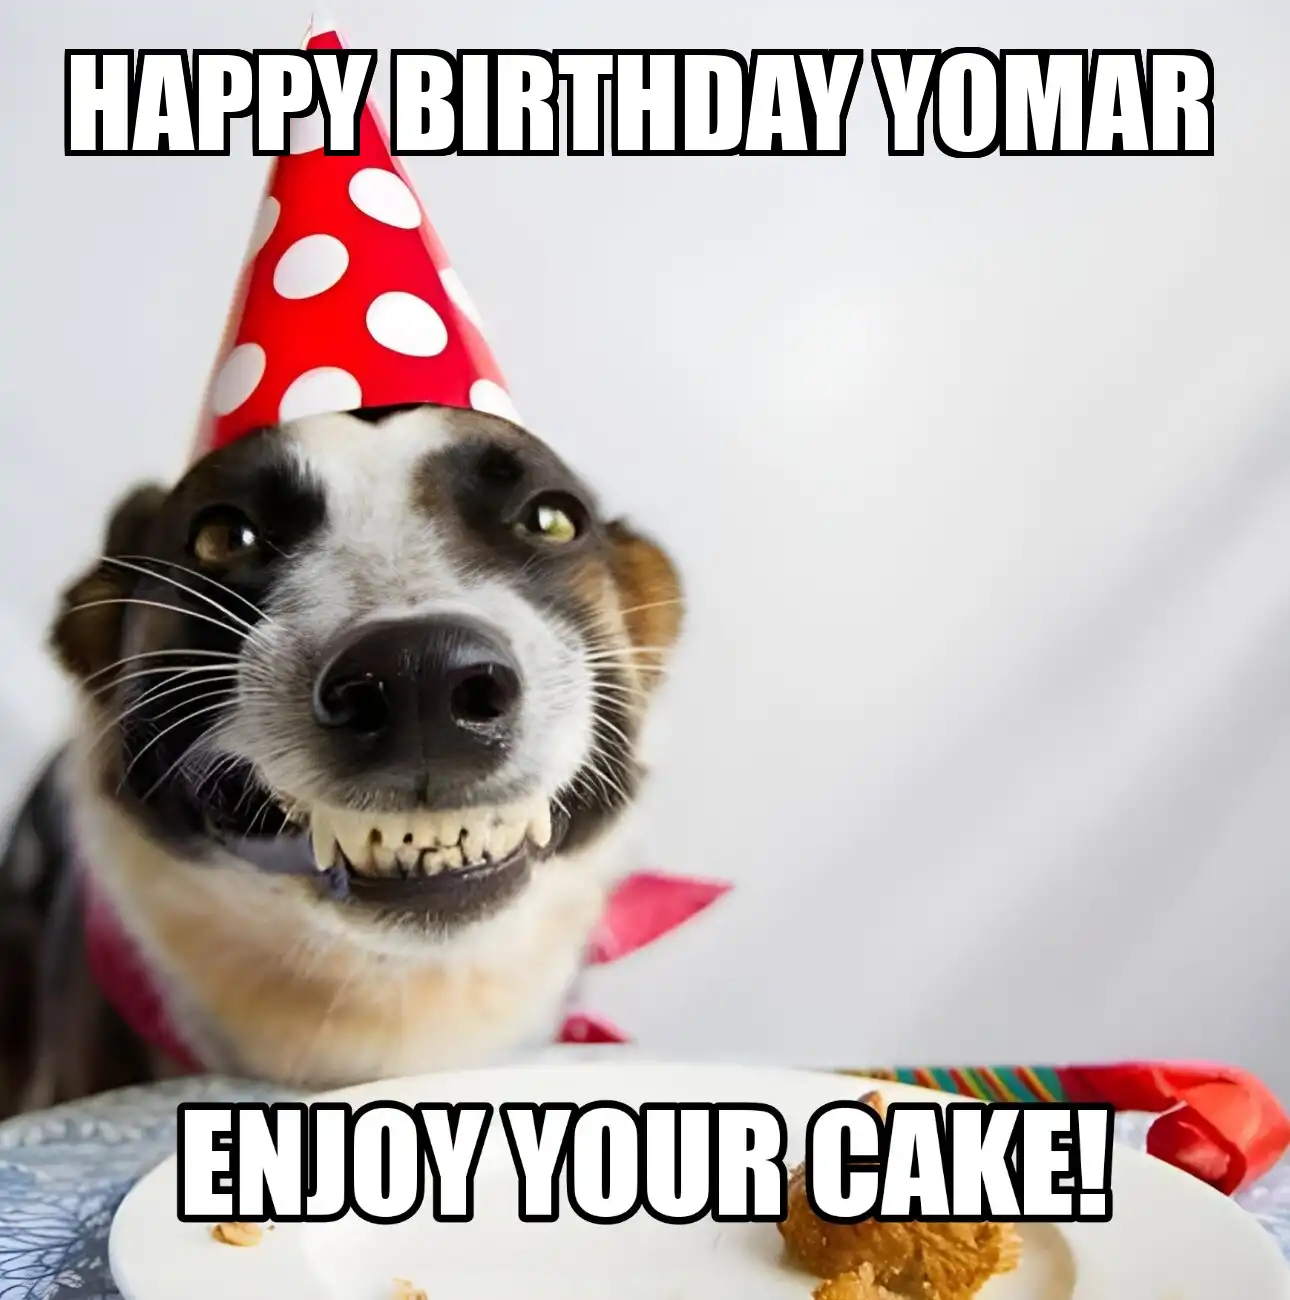 Happy Birthday Yomar Enjoy Your Cake Dog Meme